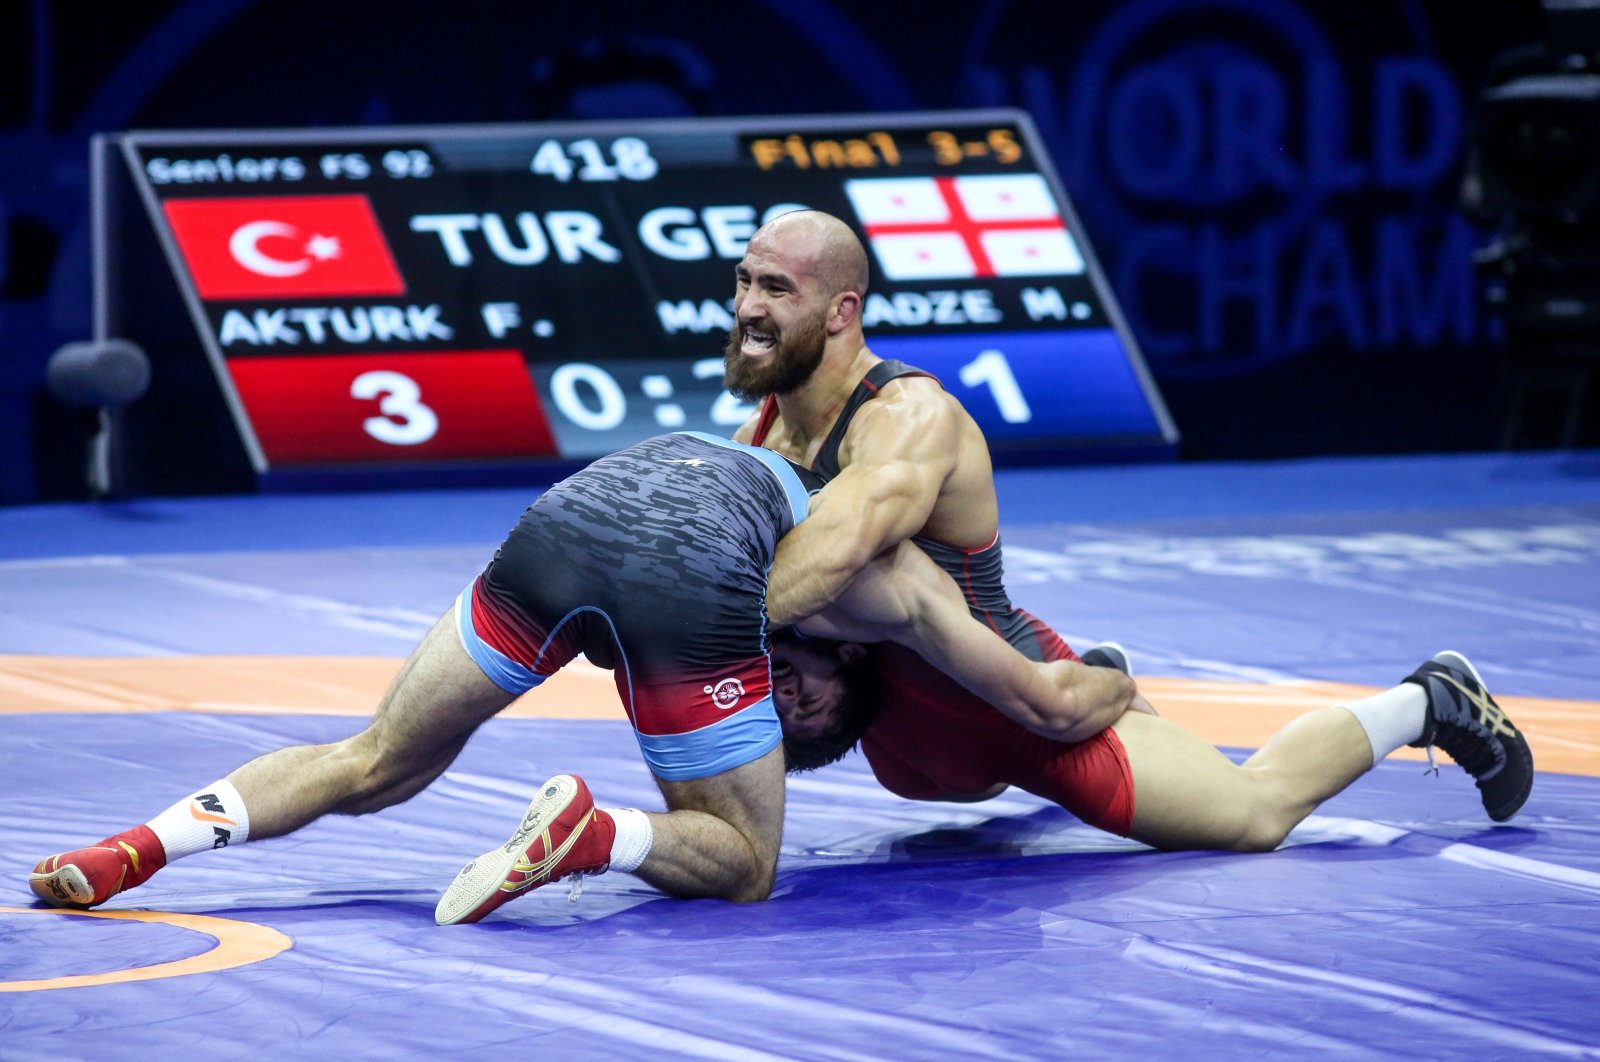 Türk güreşçi Aktürk, Dünya Şampiyonası’nda 200’üncü madalyayı kazandı